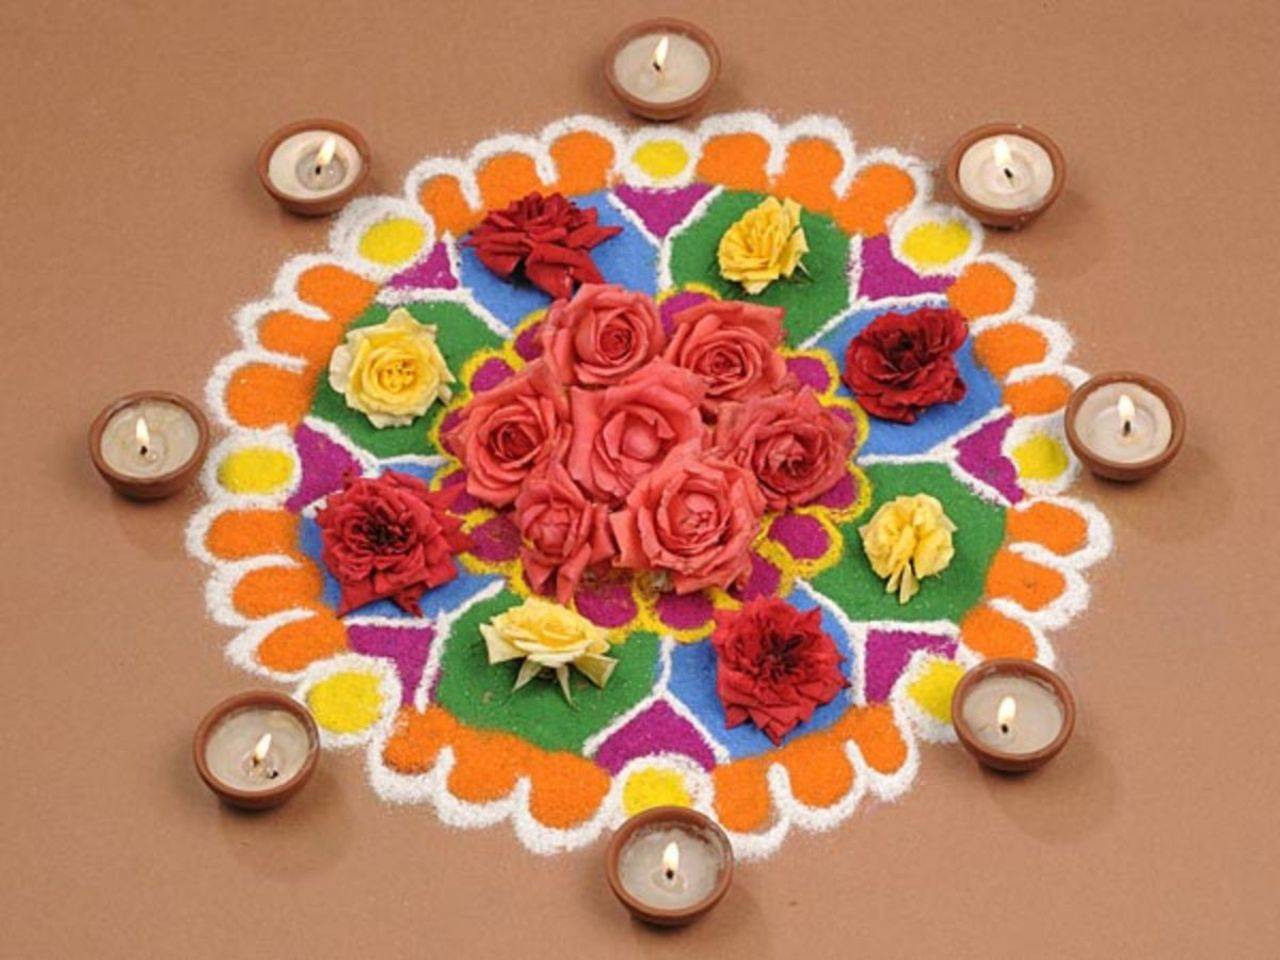 Diwali Rangoli Designs: Here are 10 unique flower Rangoli designs to try  this Diwali - Times of India